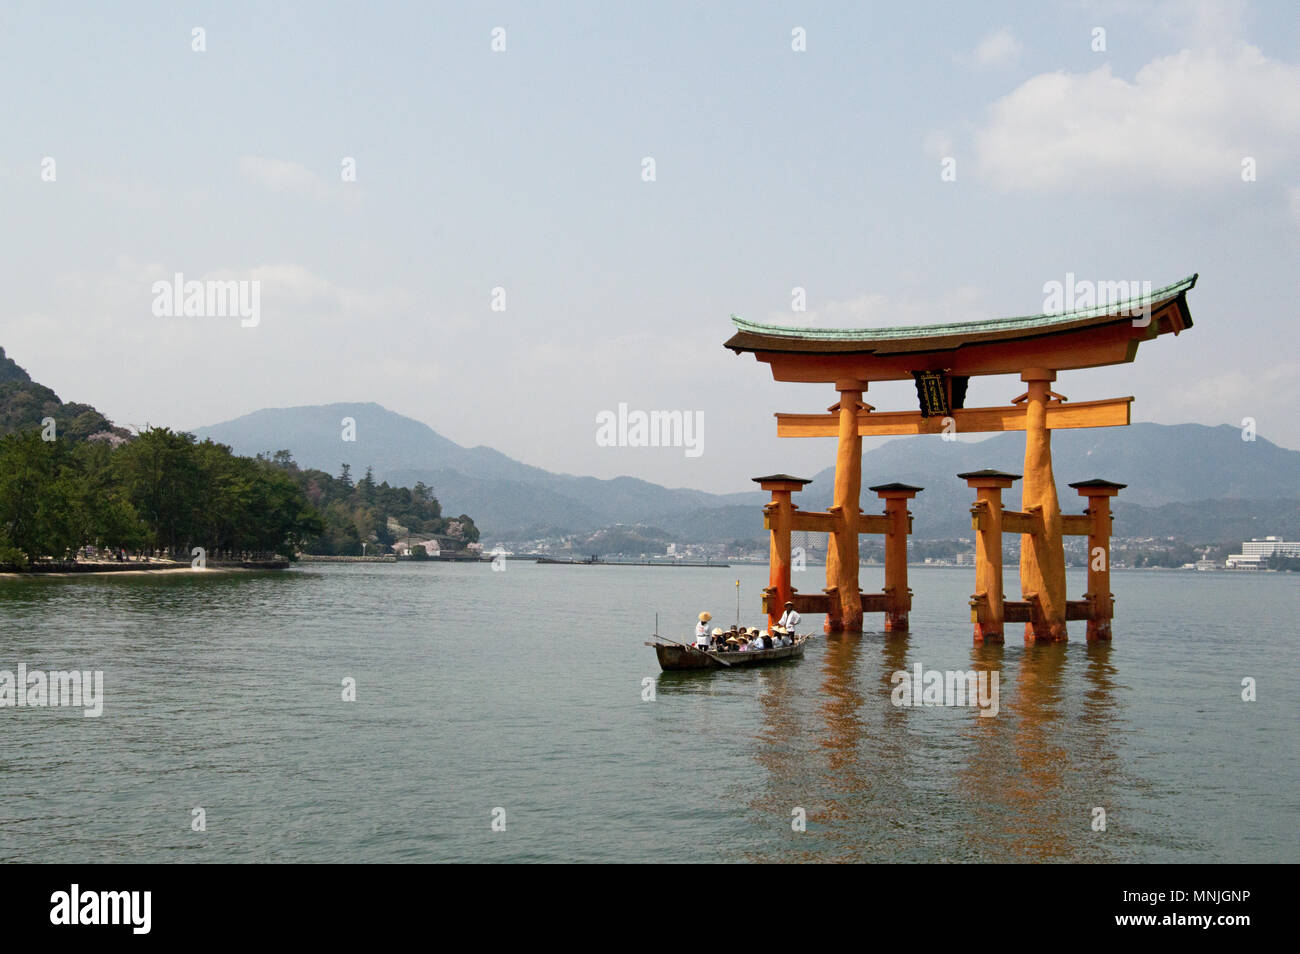 Sanctuaire d'Itsukushima, 'floating culte', sur l'île de Miyajima avec bateau de tourisme, Japon Banque D'Images